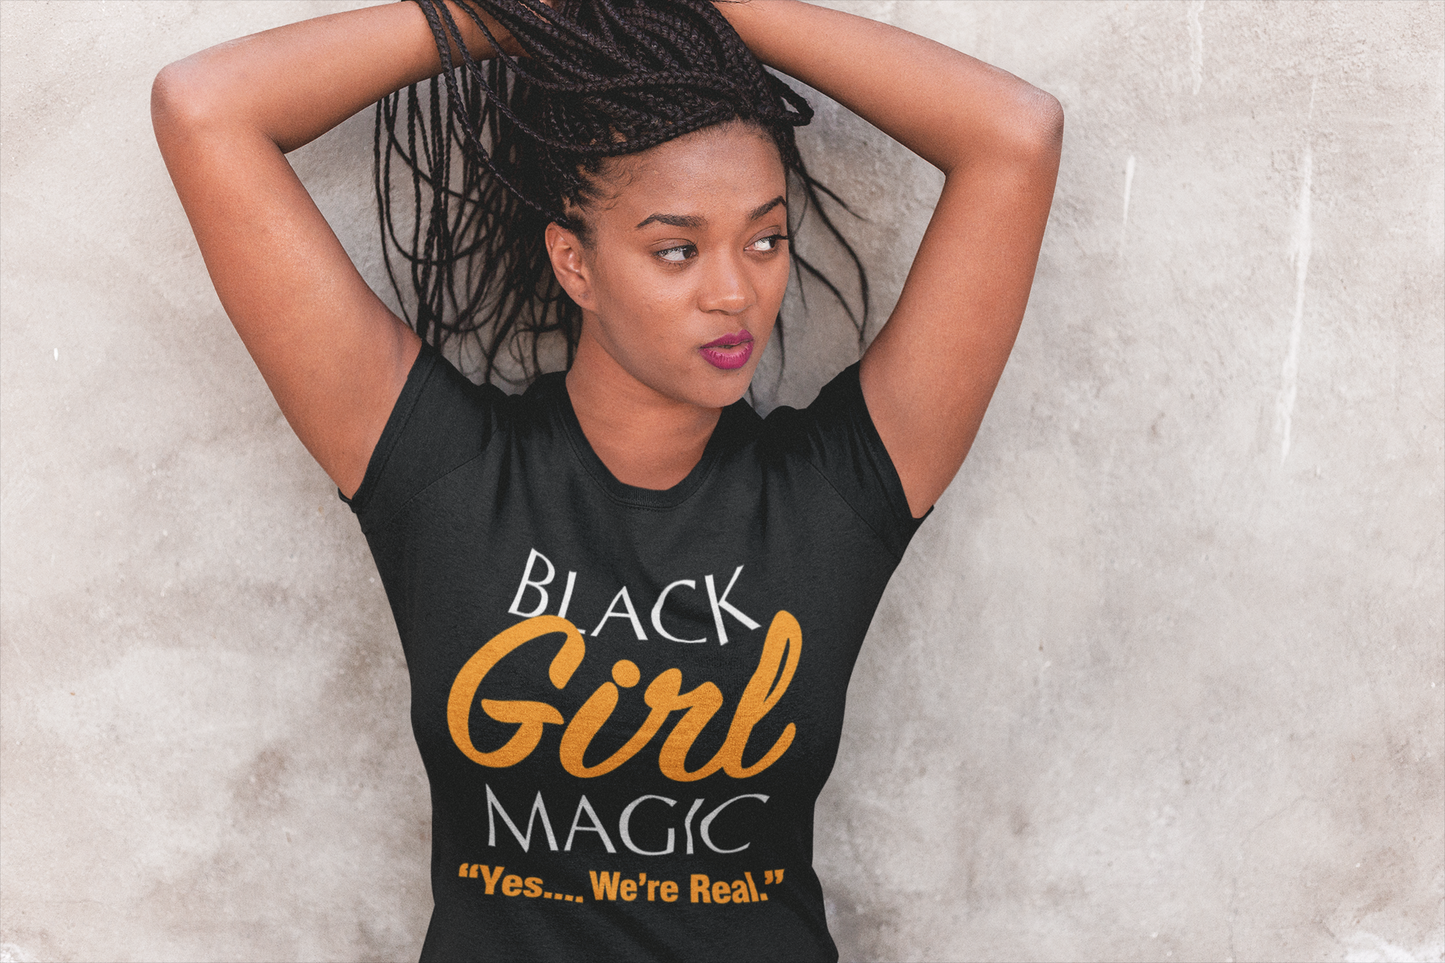 BLM - Black Girl Magic Shirt